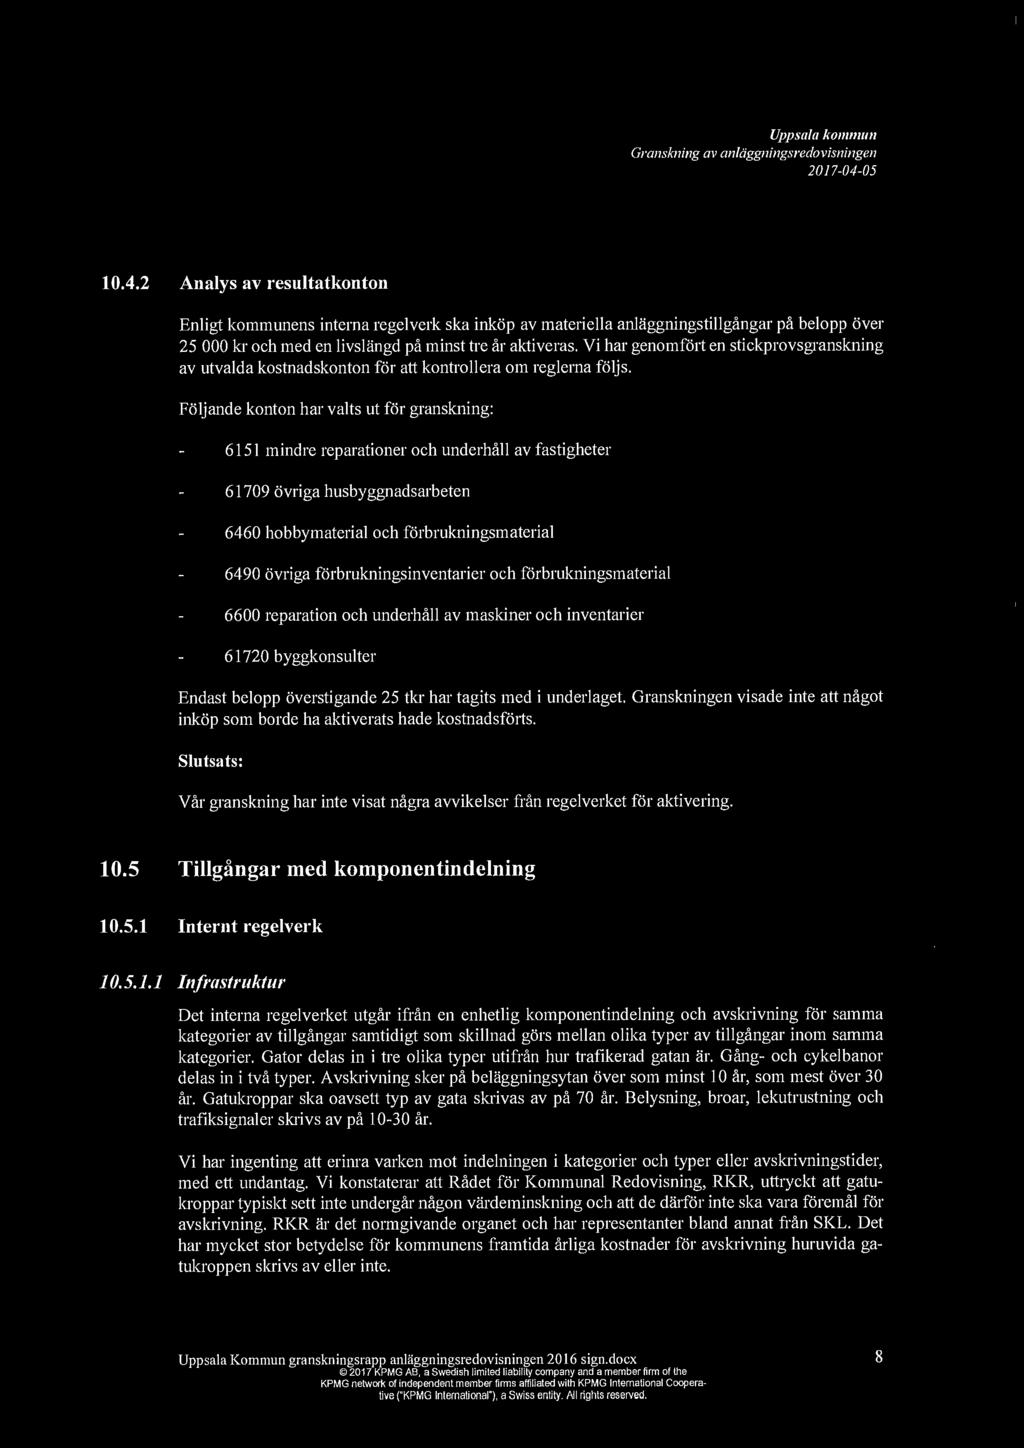 Uppsala ko1111111111 Granskning av anliiggningsredovisningen 10.4.